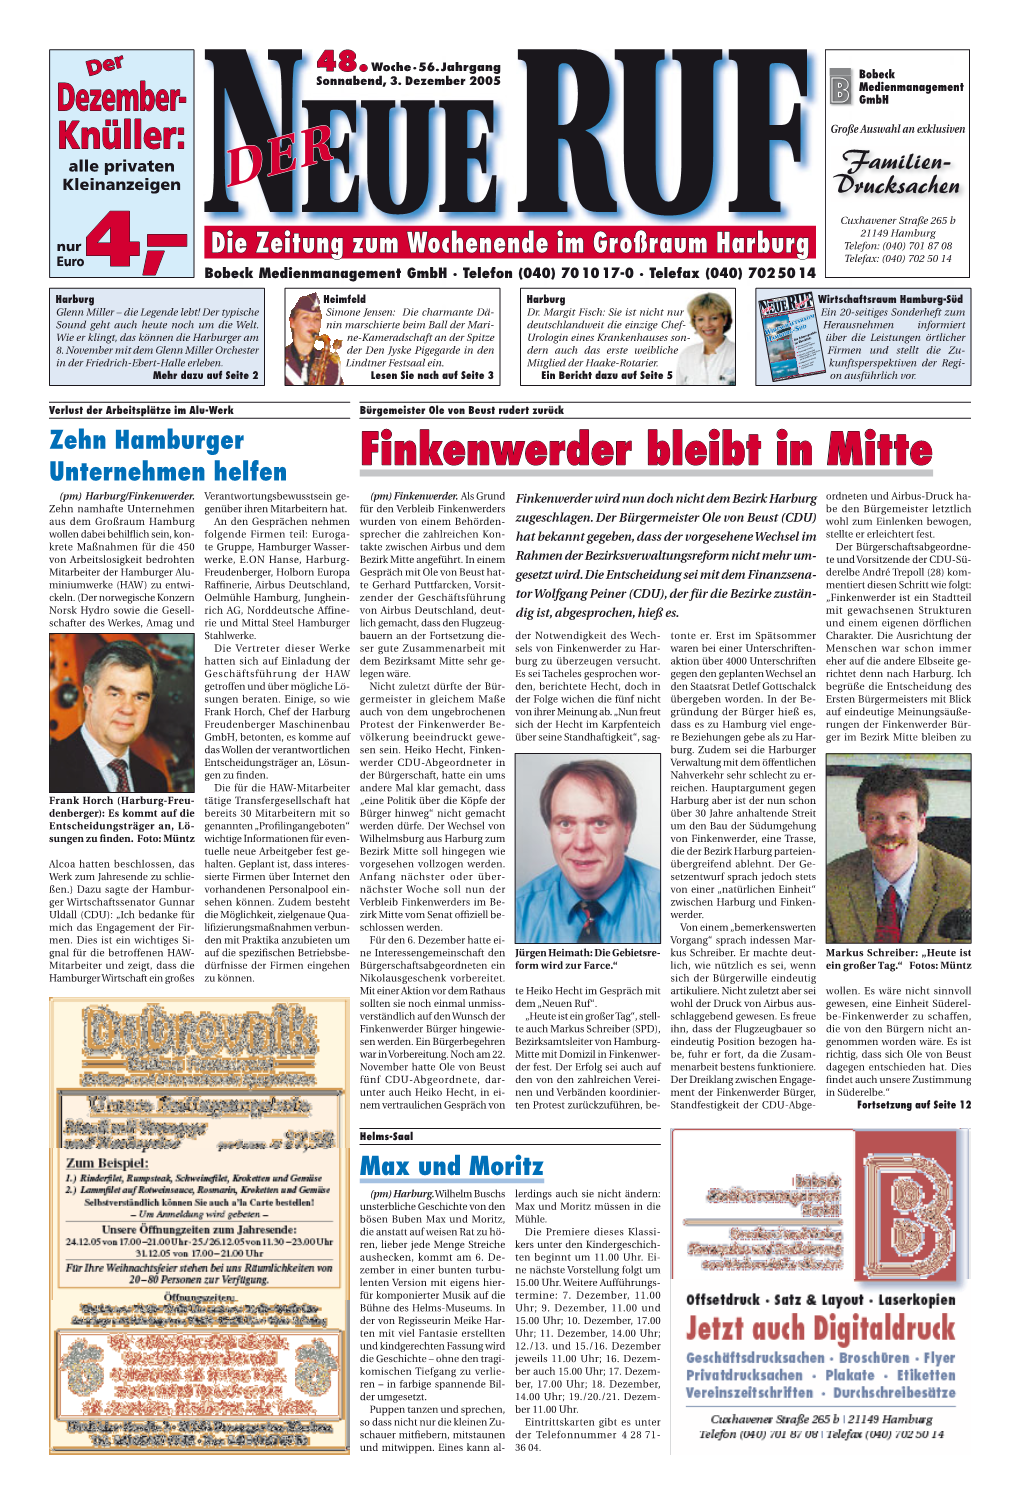 Finkenwerder Bleibt in Mitte (Pm) Harburg/Finkenwerder